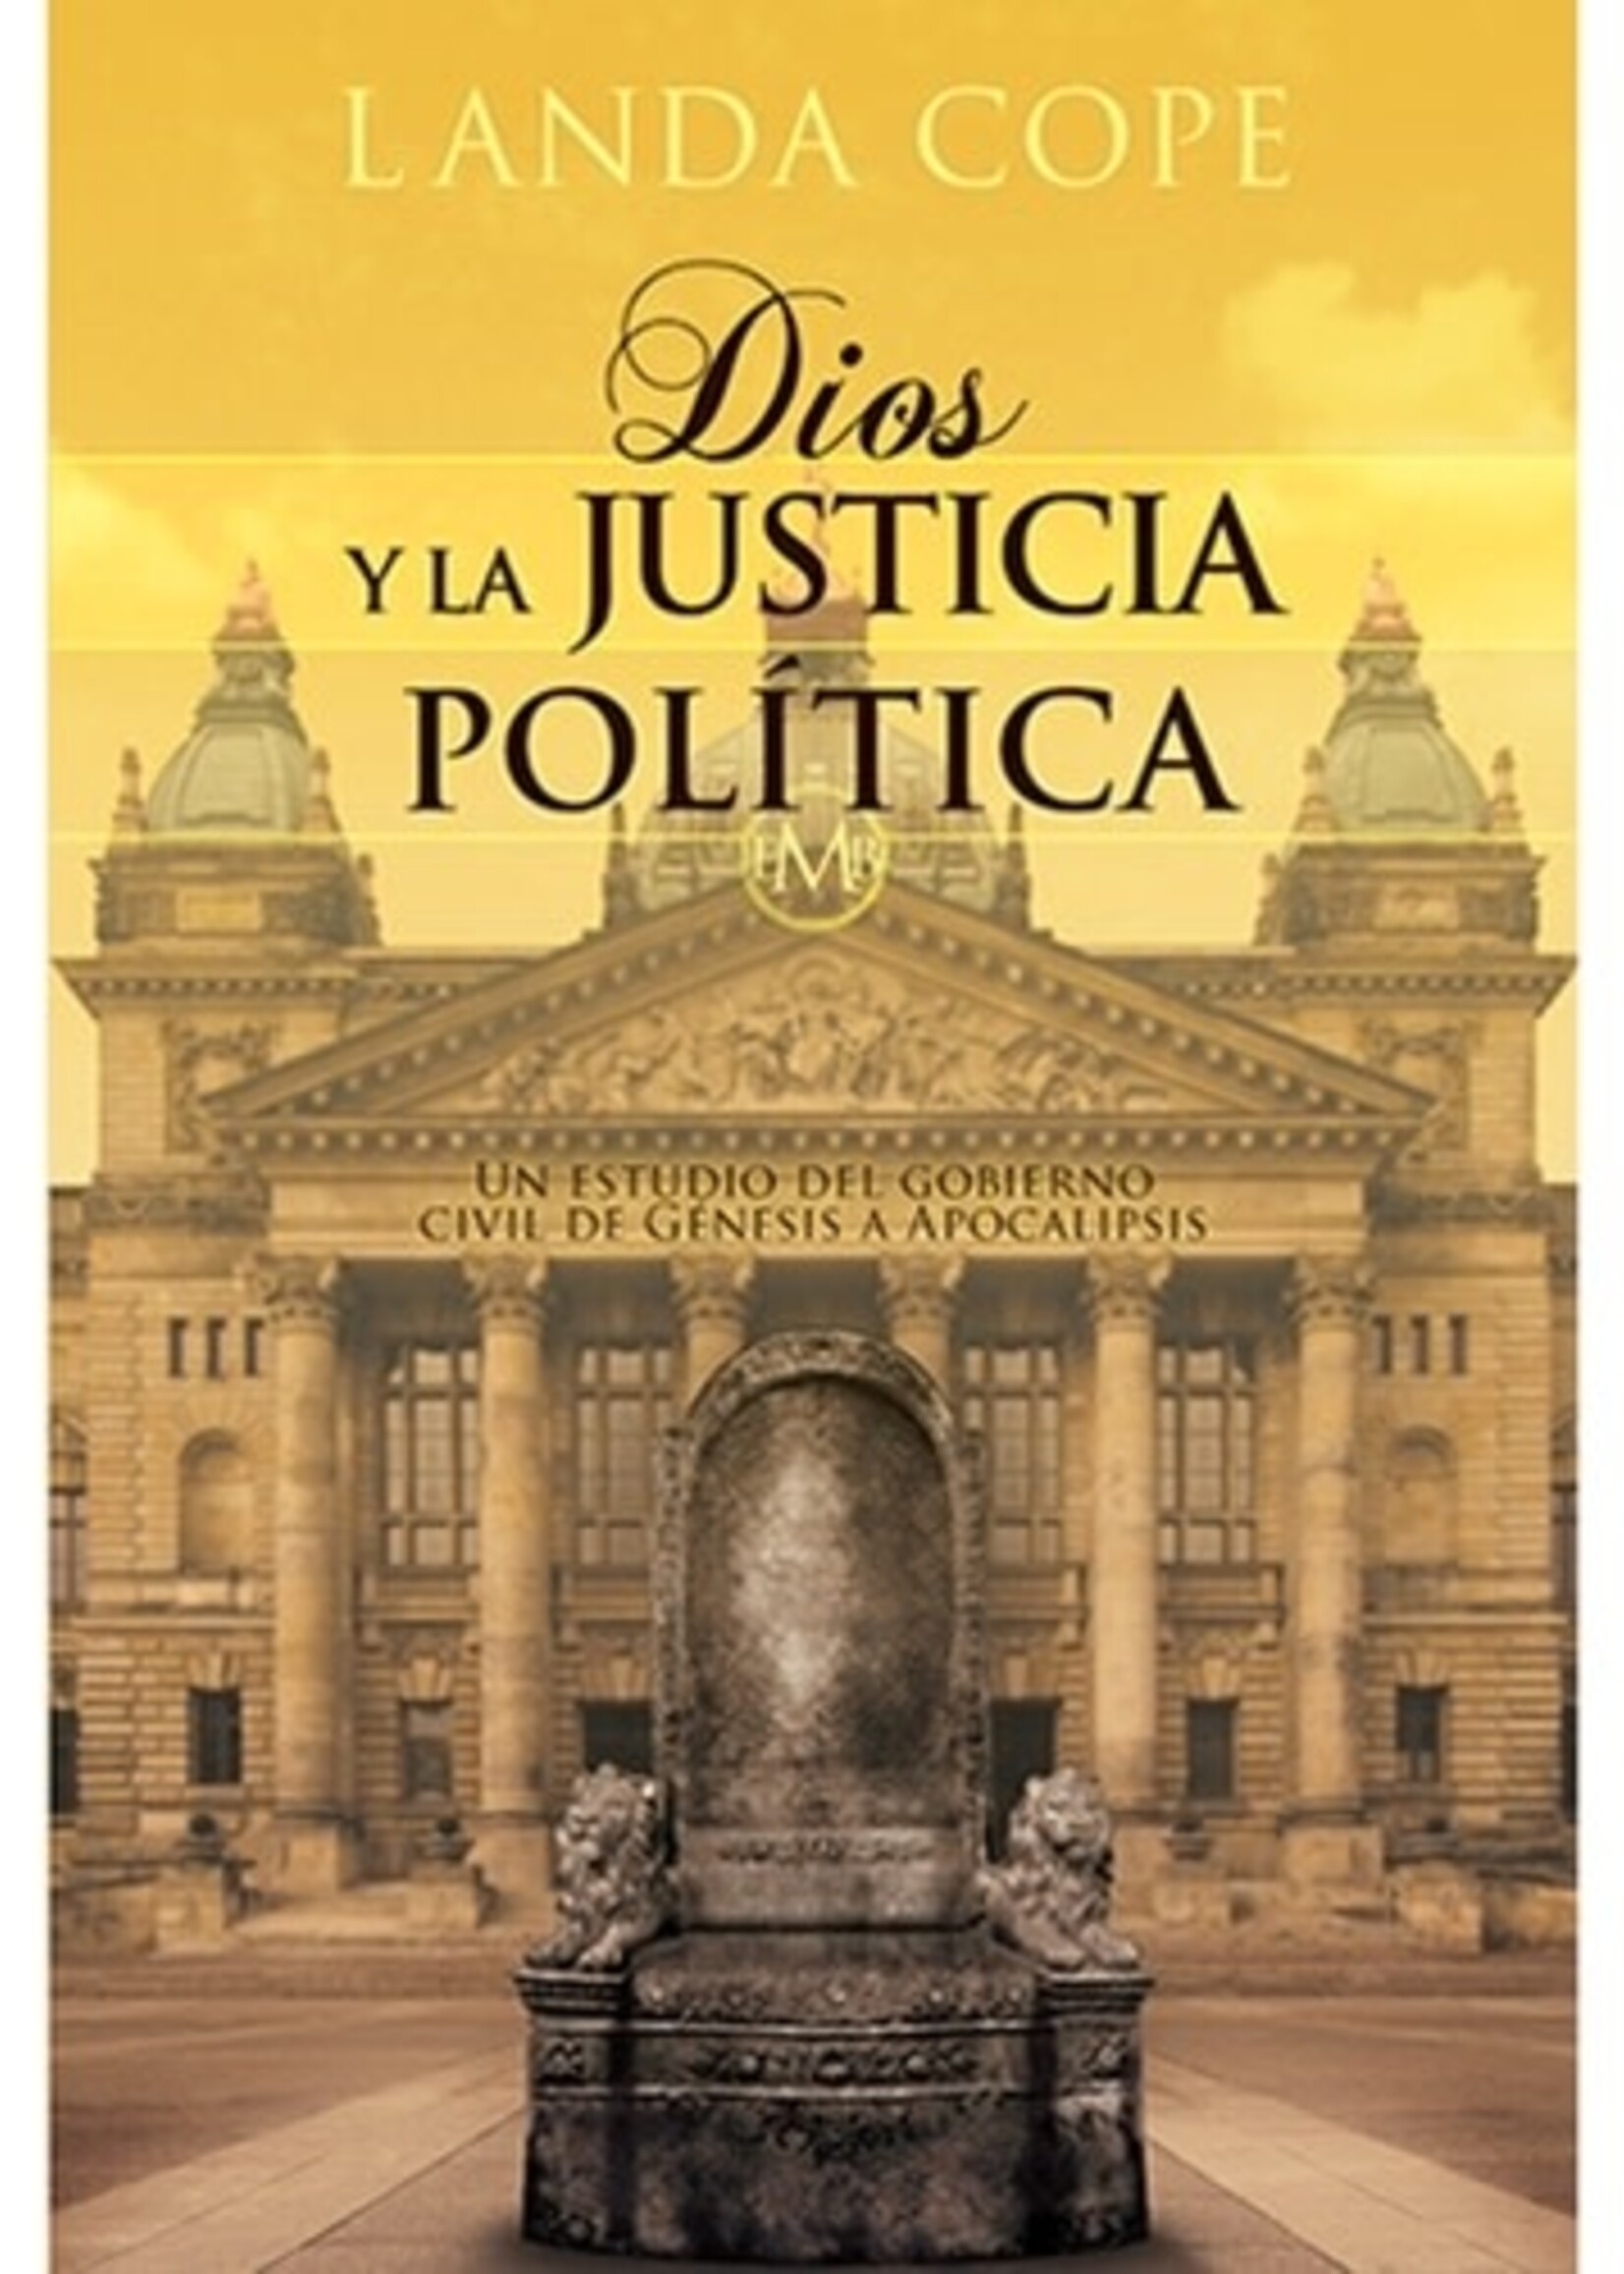 EDITORIAL JUCUM DIOS Y LA JUSTICIA POLITICA: UN ESTUDIO DEL GOBIERNO CIVIL DE GENESIS A APOCALIPSIS